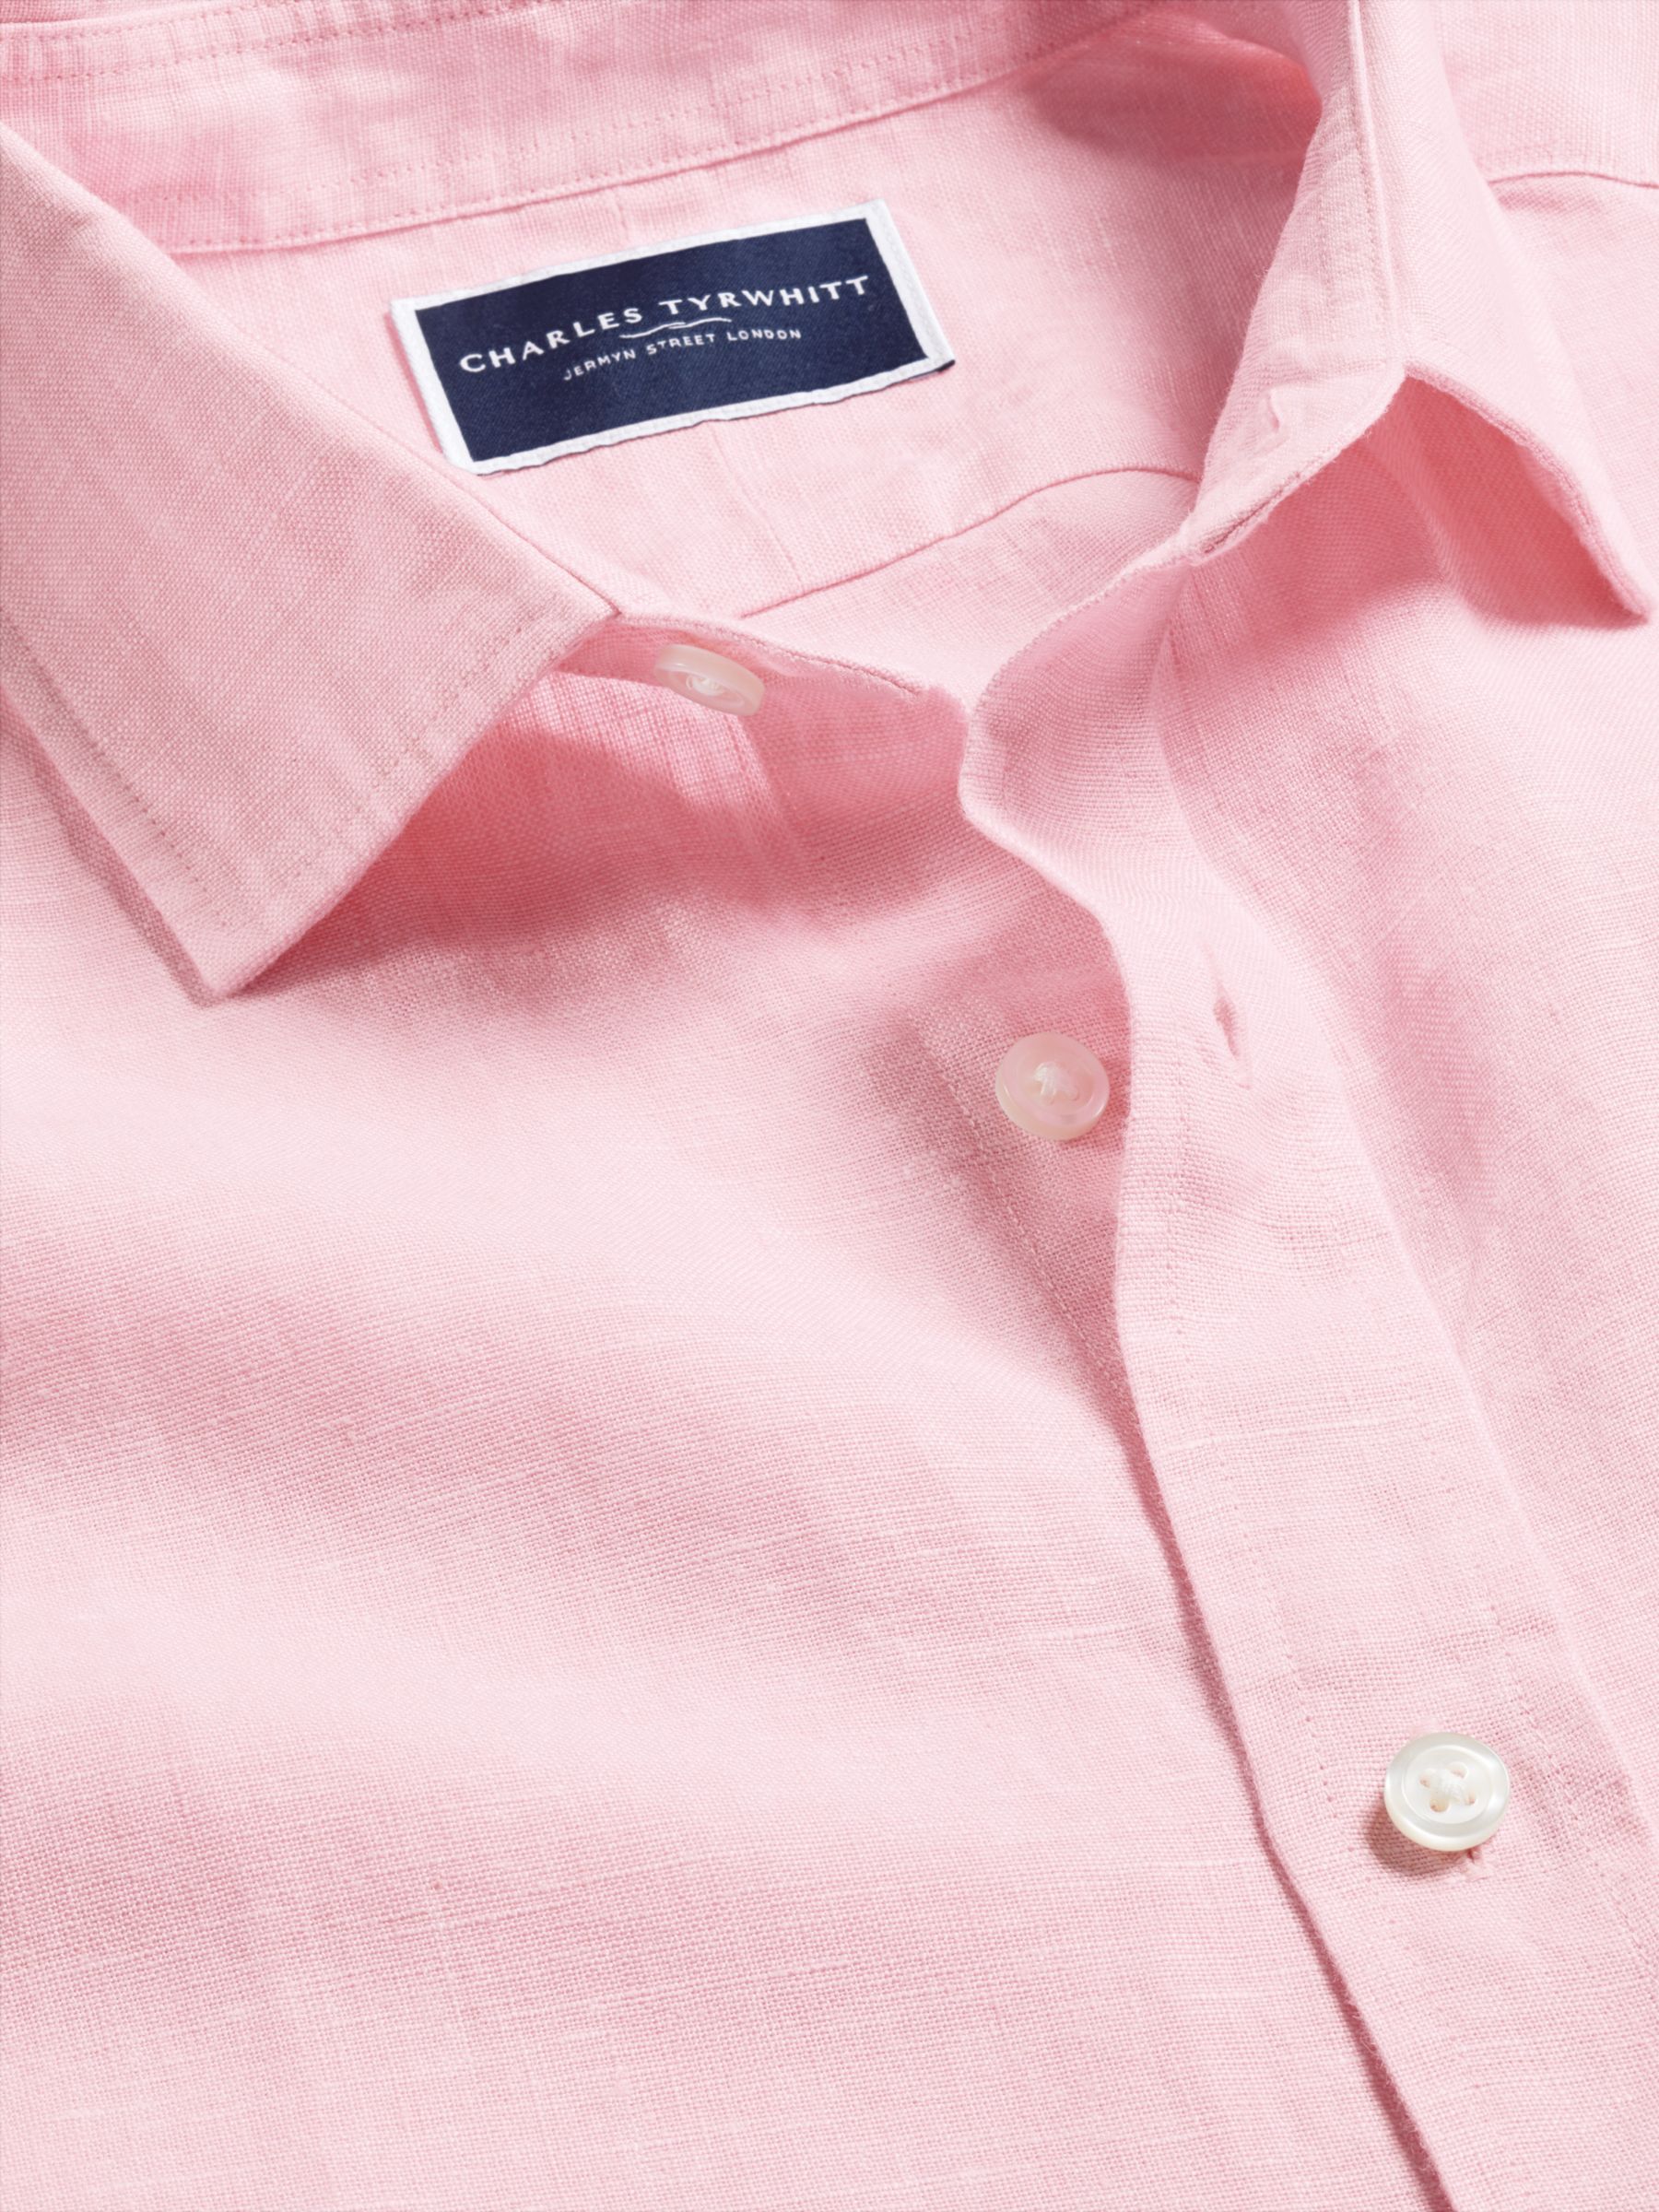 Buy Charles Tyrwhitt Linen Slim Fit Short Sleeve Shirt Online at johnlewis.com